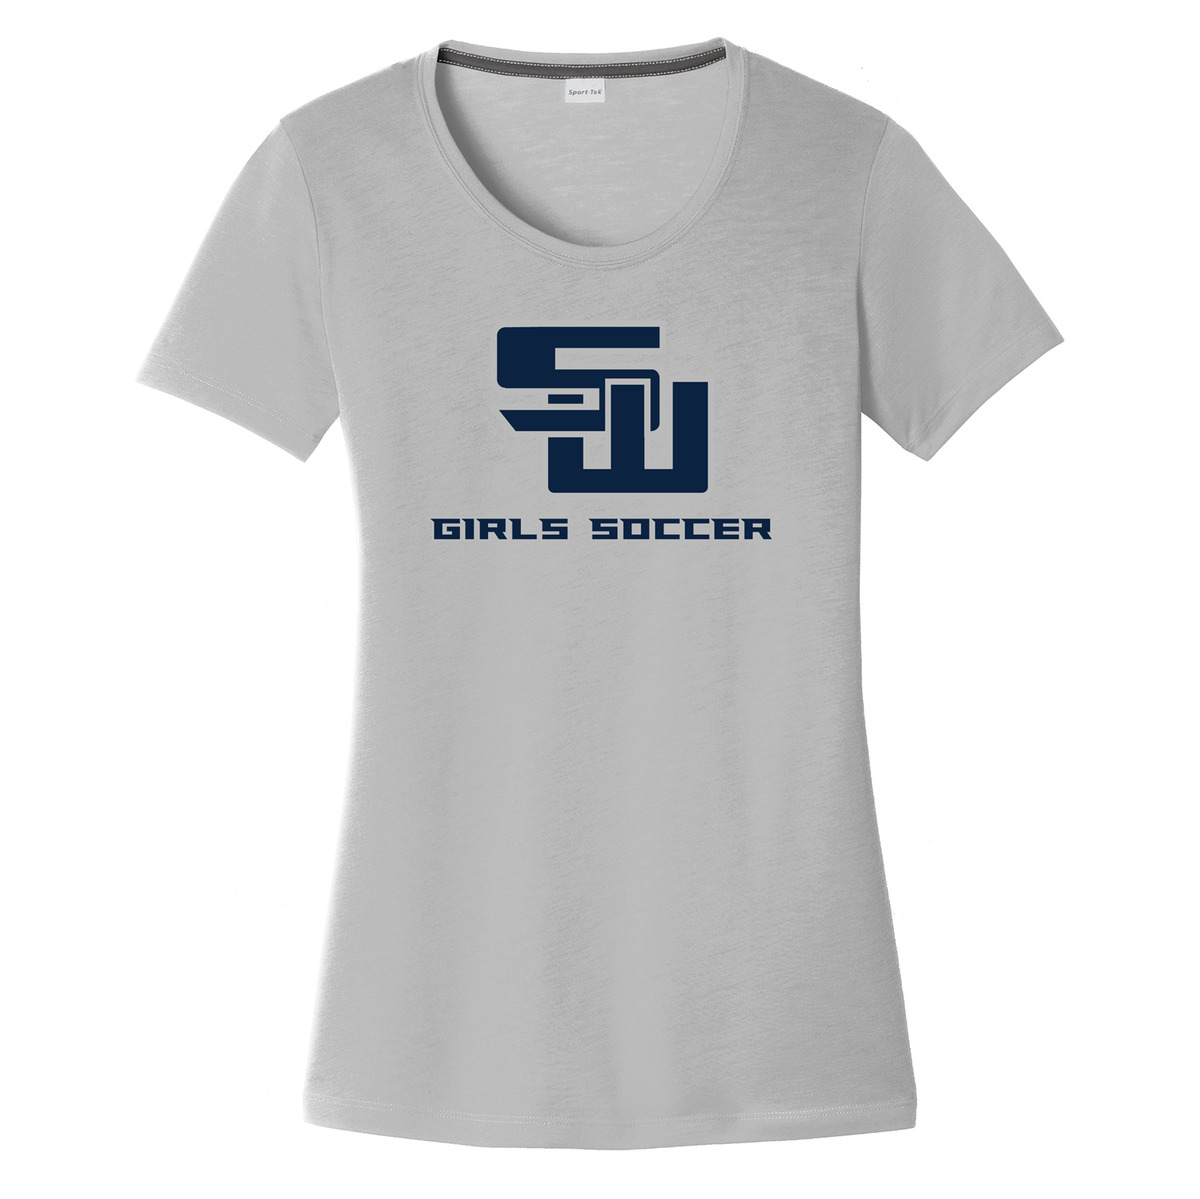 Smithtown West Girls Soccer Women's CottonTouch Performance T-Shirt